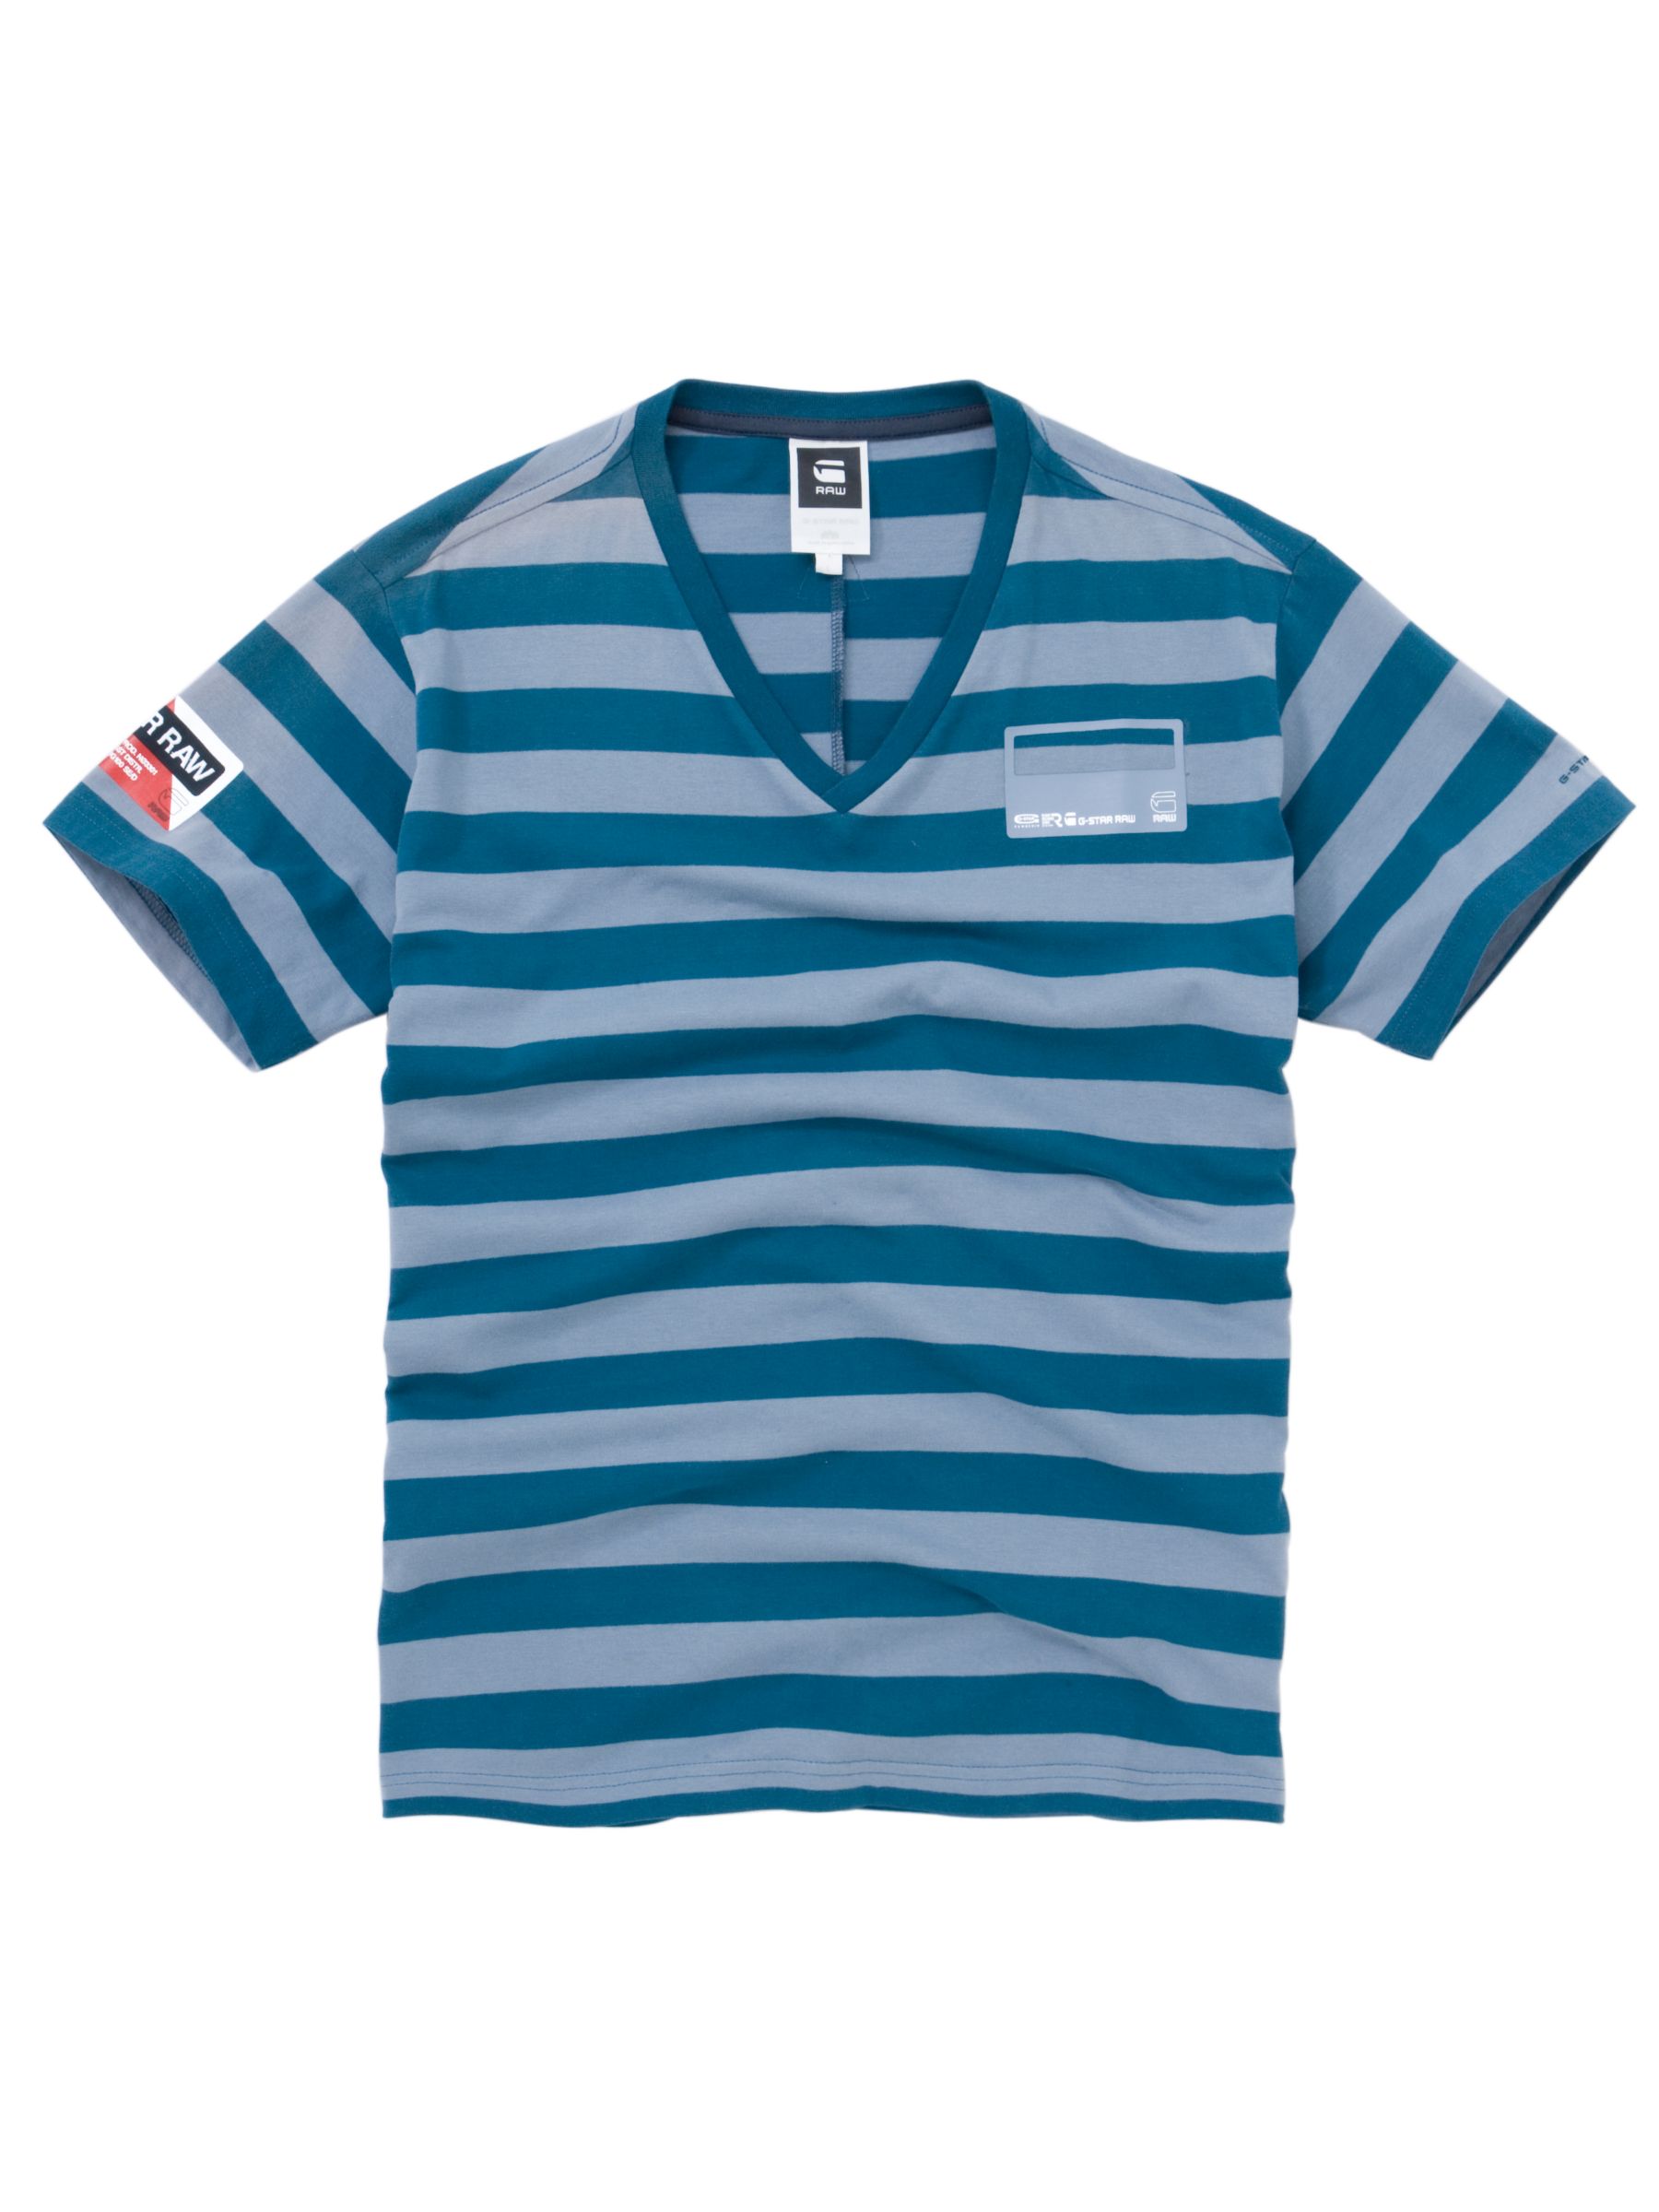 Ranger Short Sleeve Stripe T-Shirt,